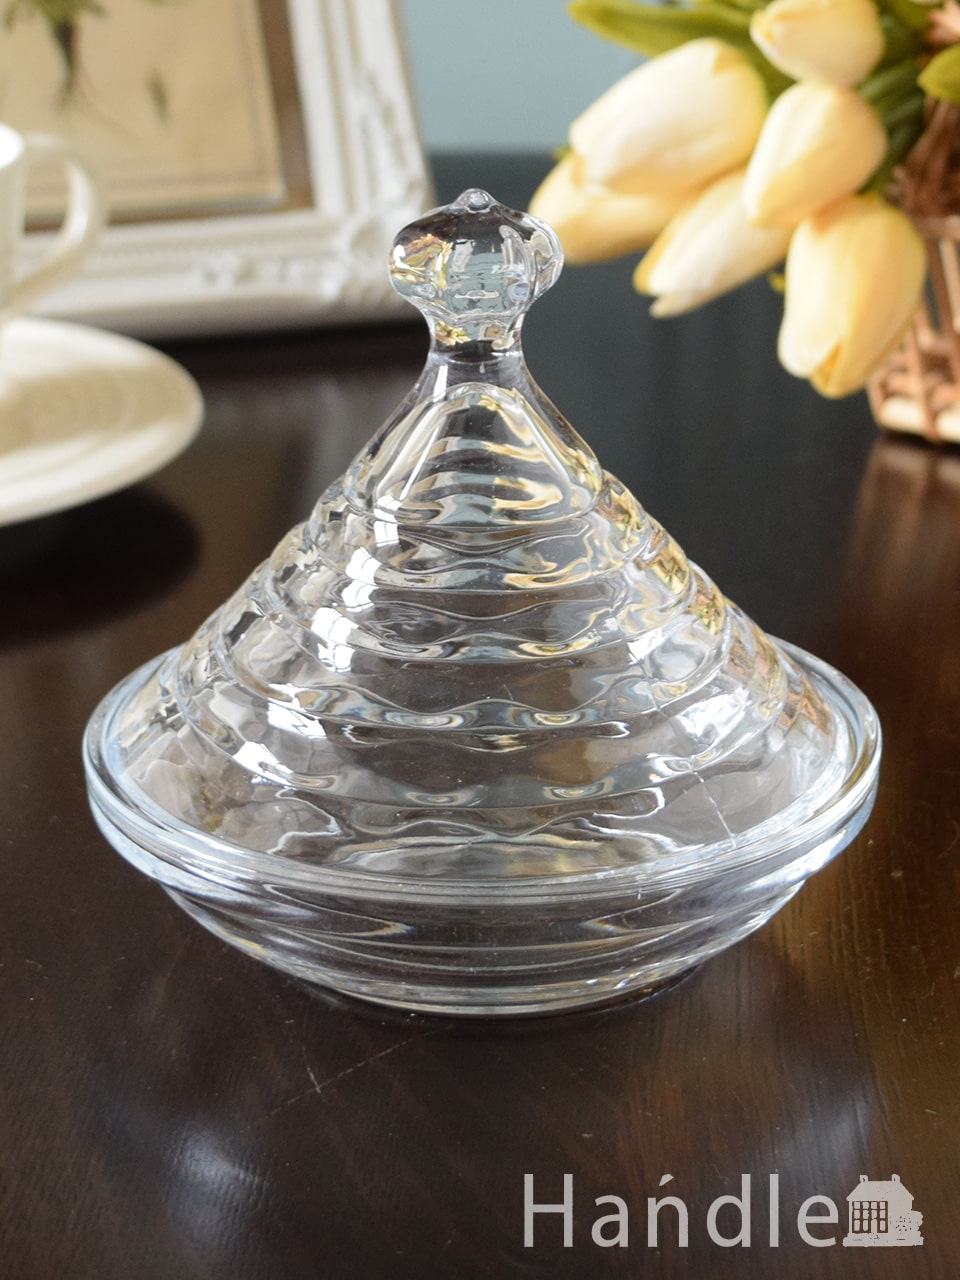 アンティーク風のおしゃれなガラス食器、可愛い蓋つきのガラスケース (n2-076)